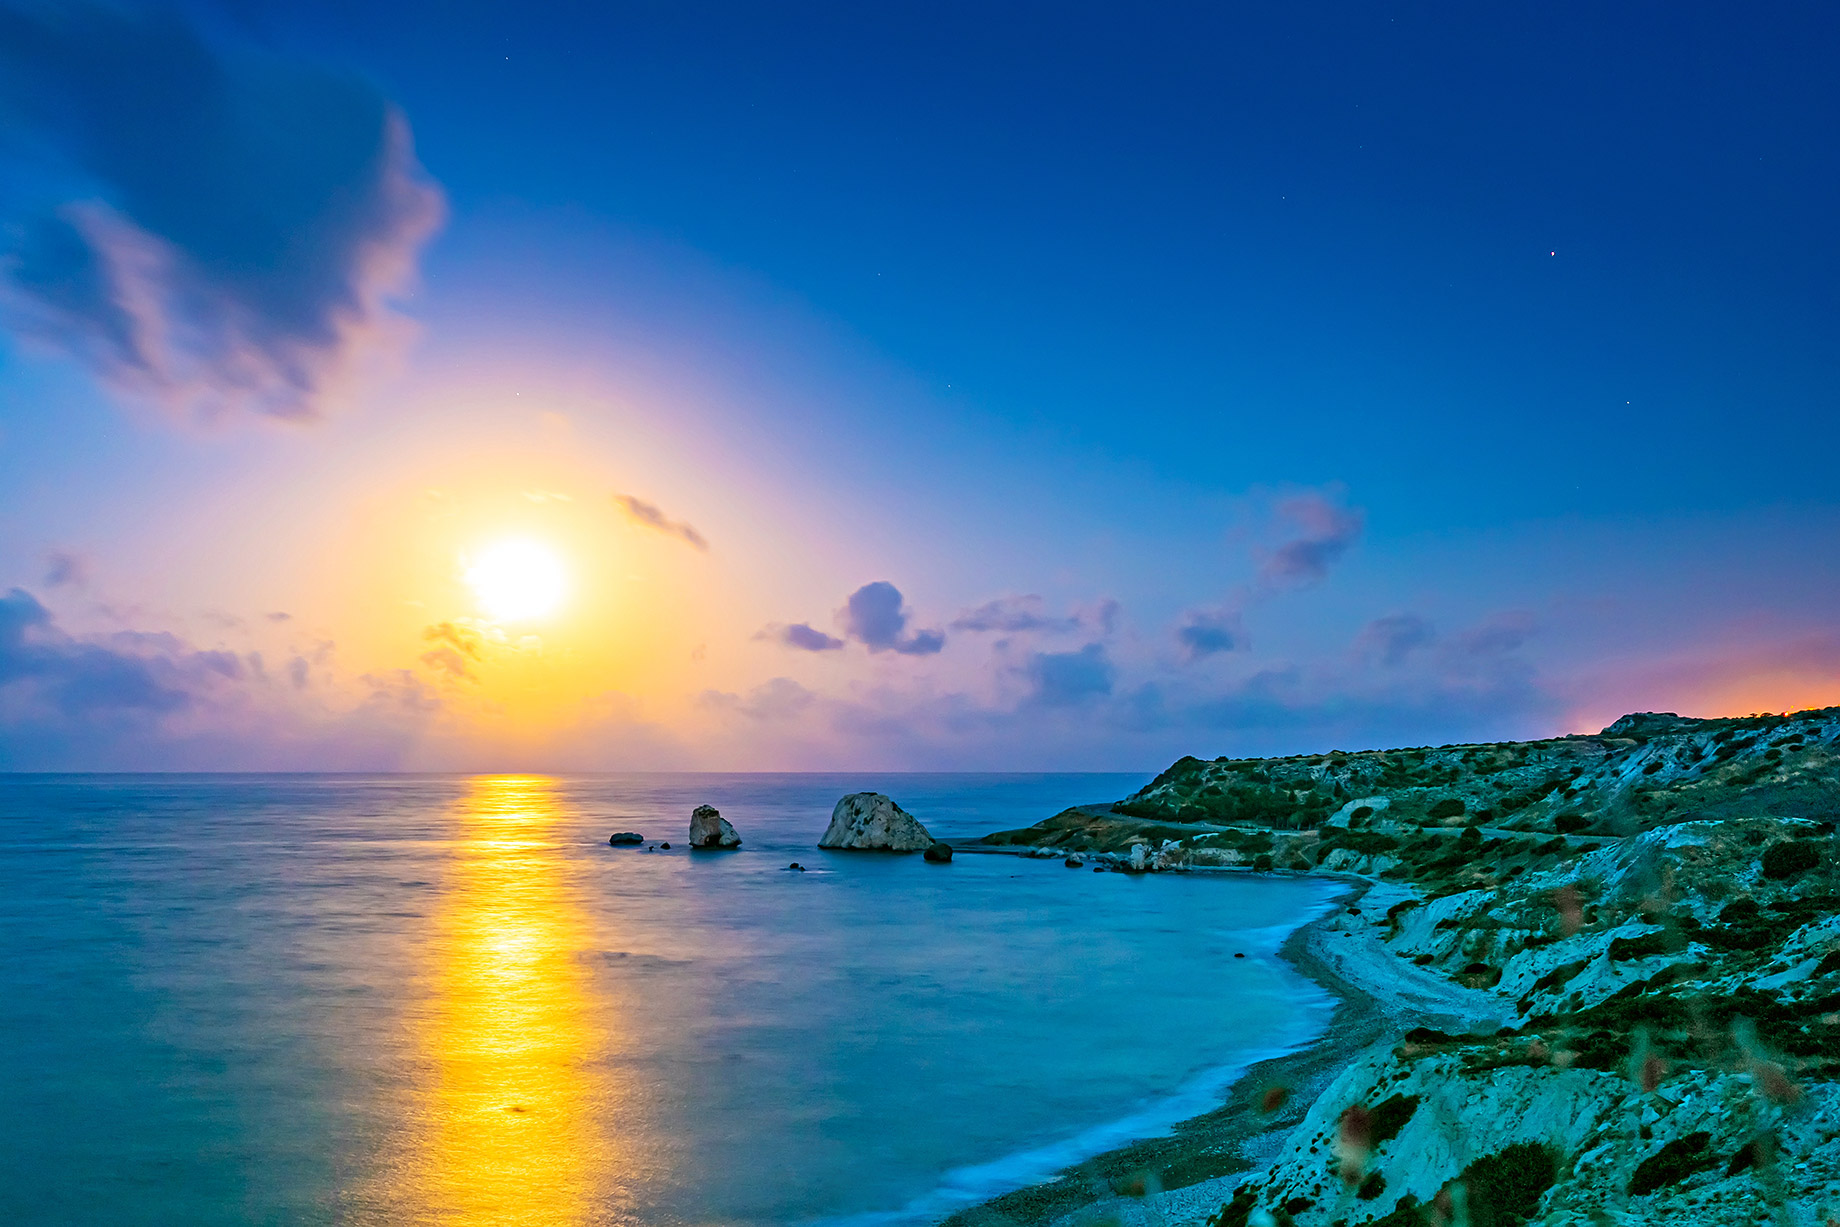 Kouklia, Cyprus